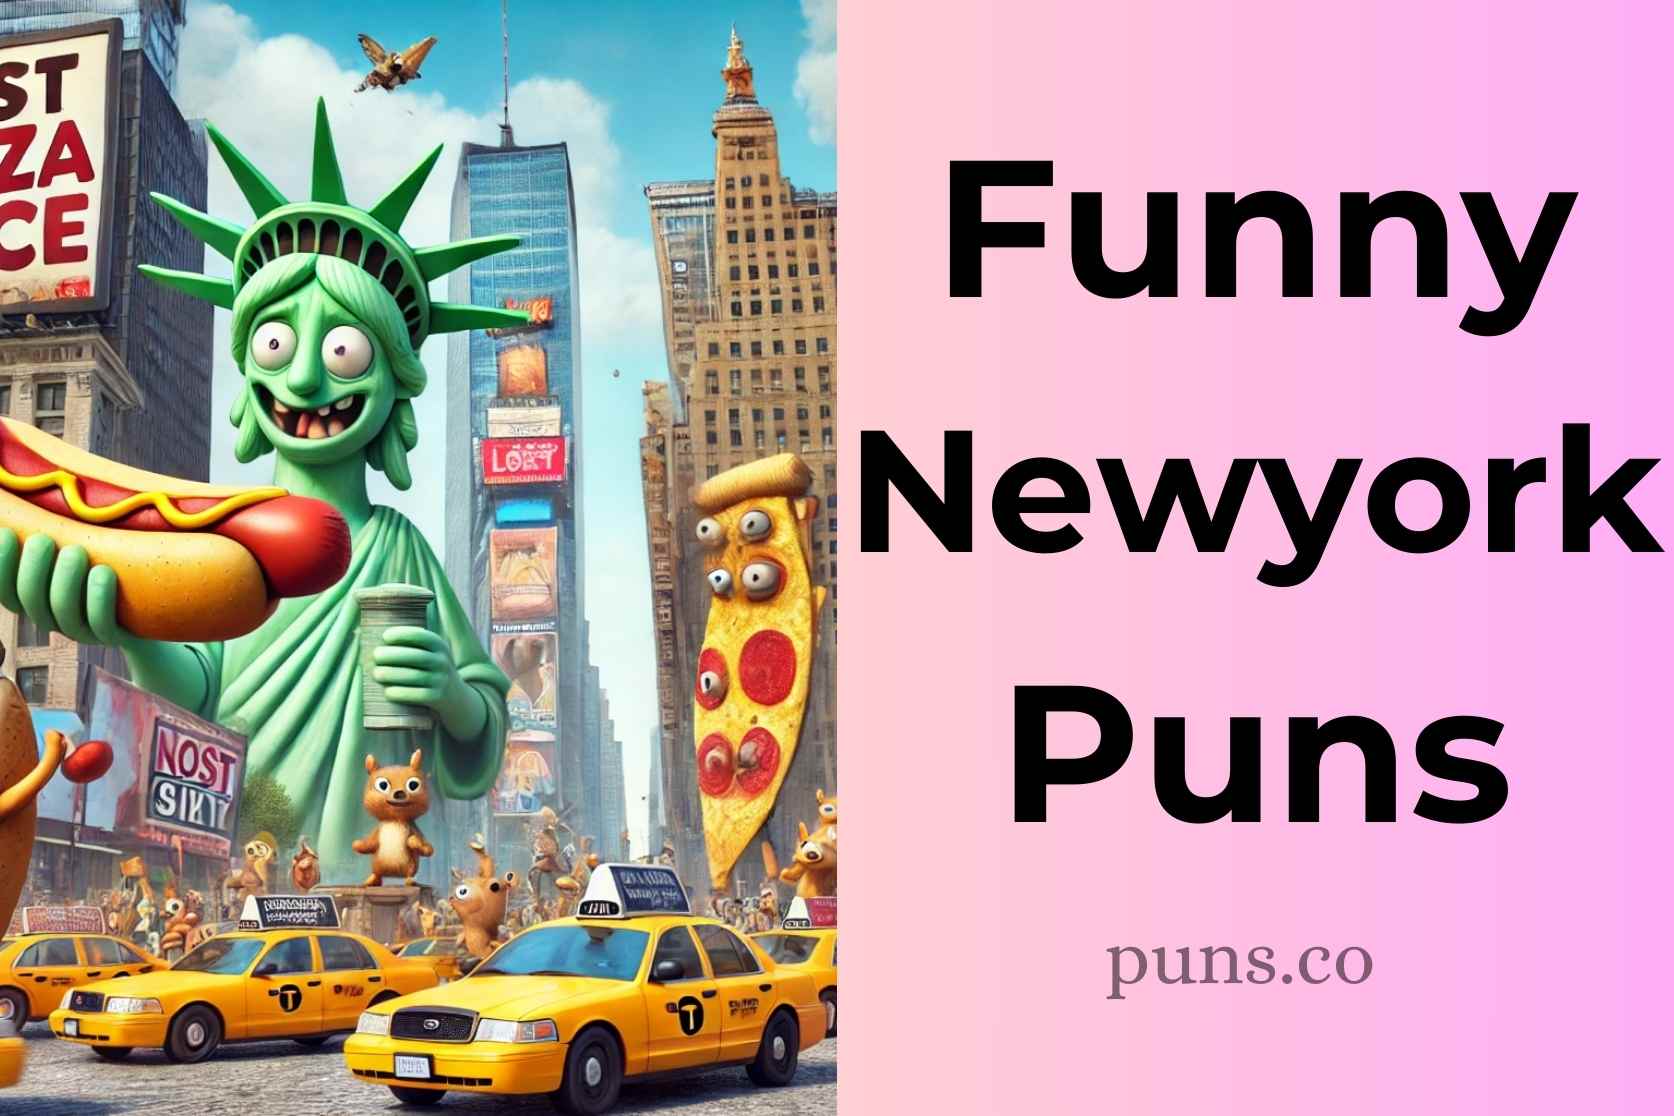 NYC puns